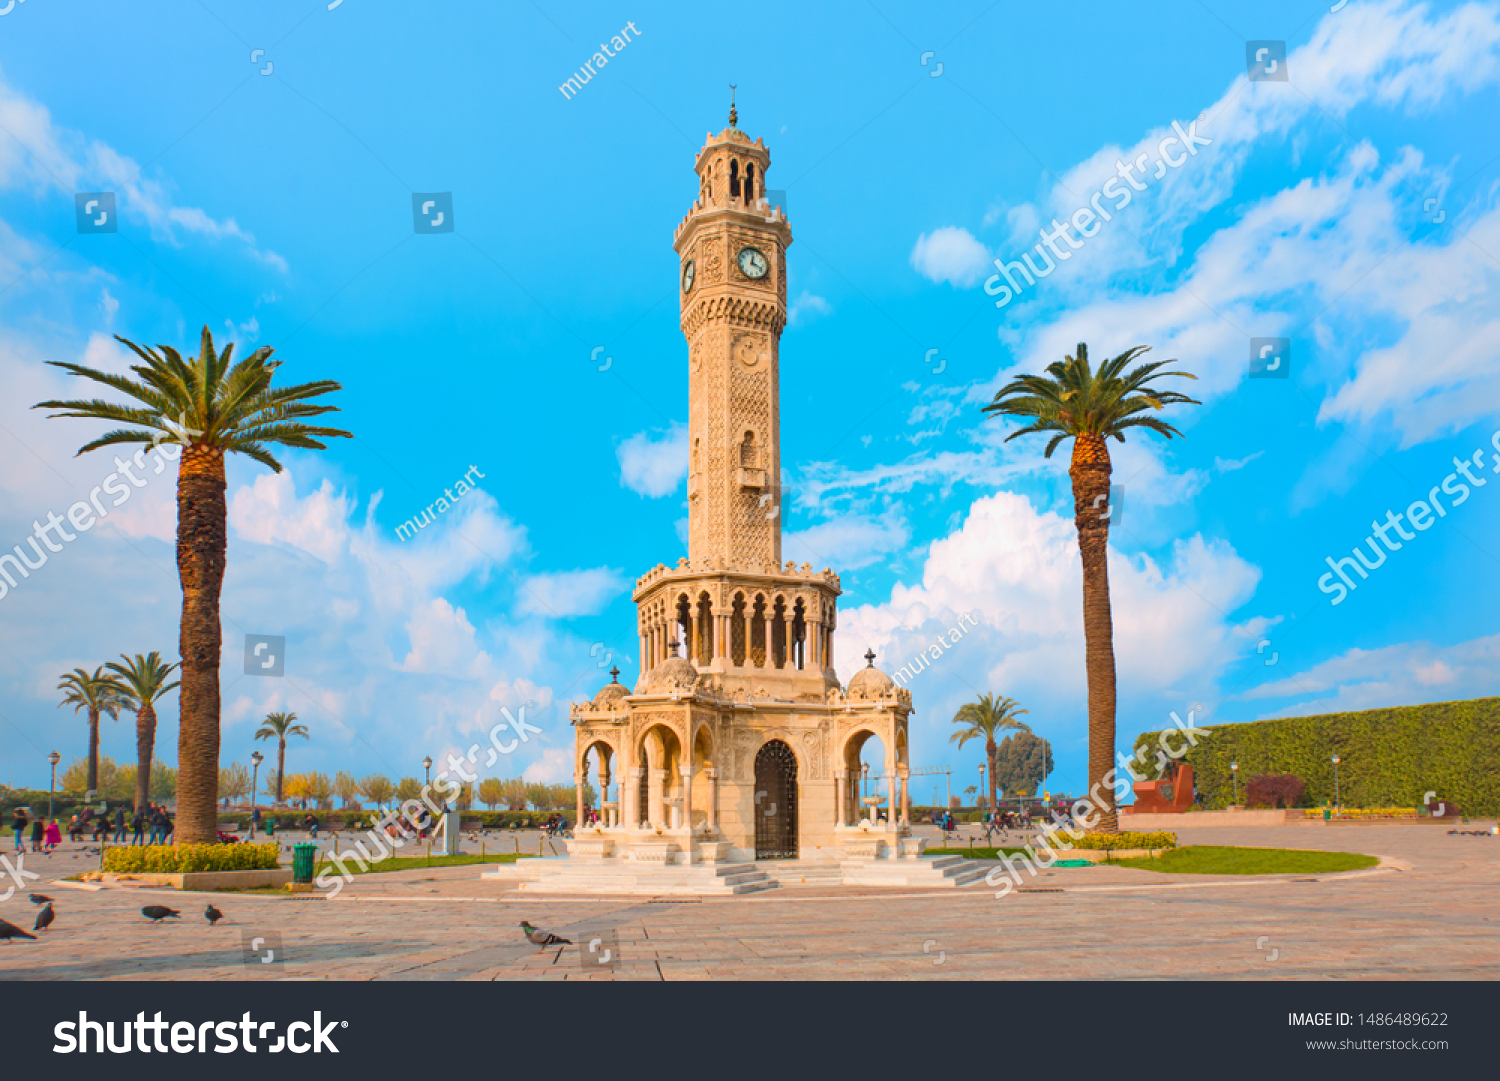 izmir clock tower. The famous clock tower became the symbol of izmir, Turkey #1486489622